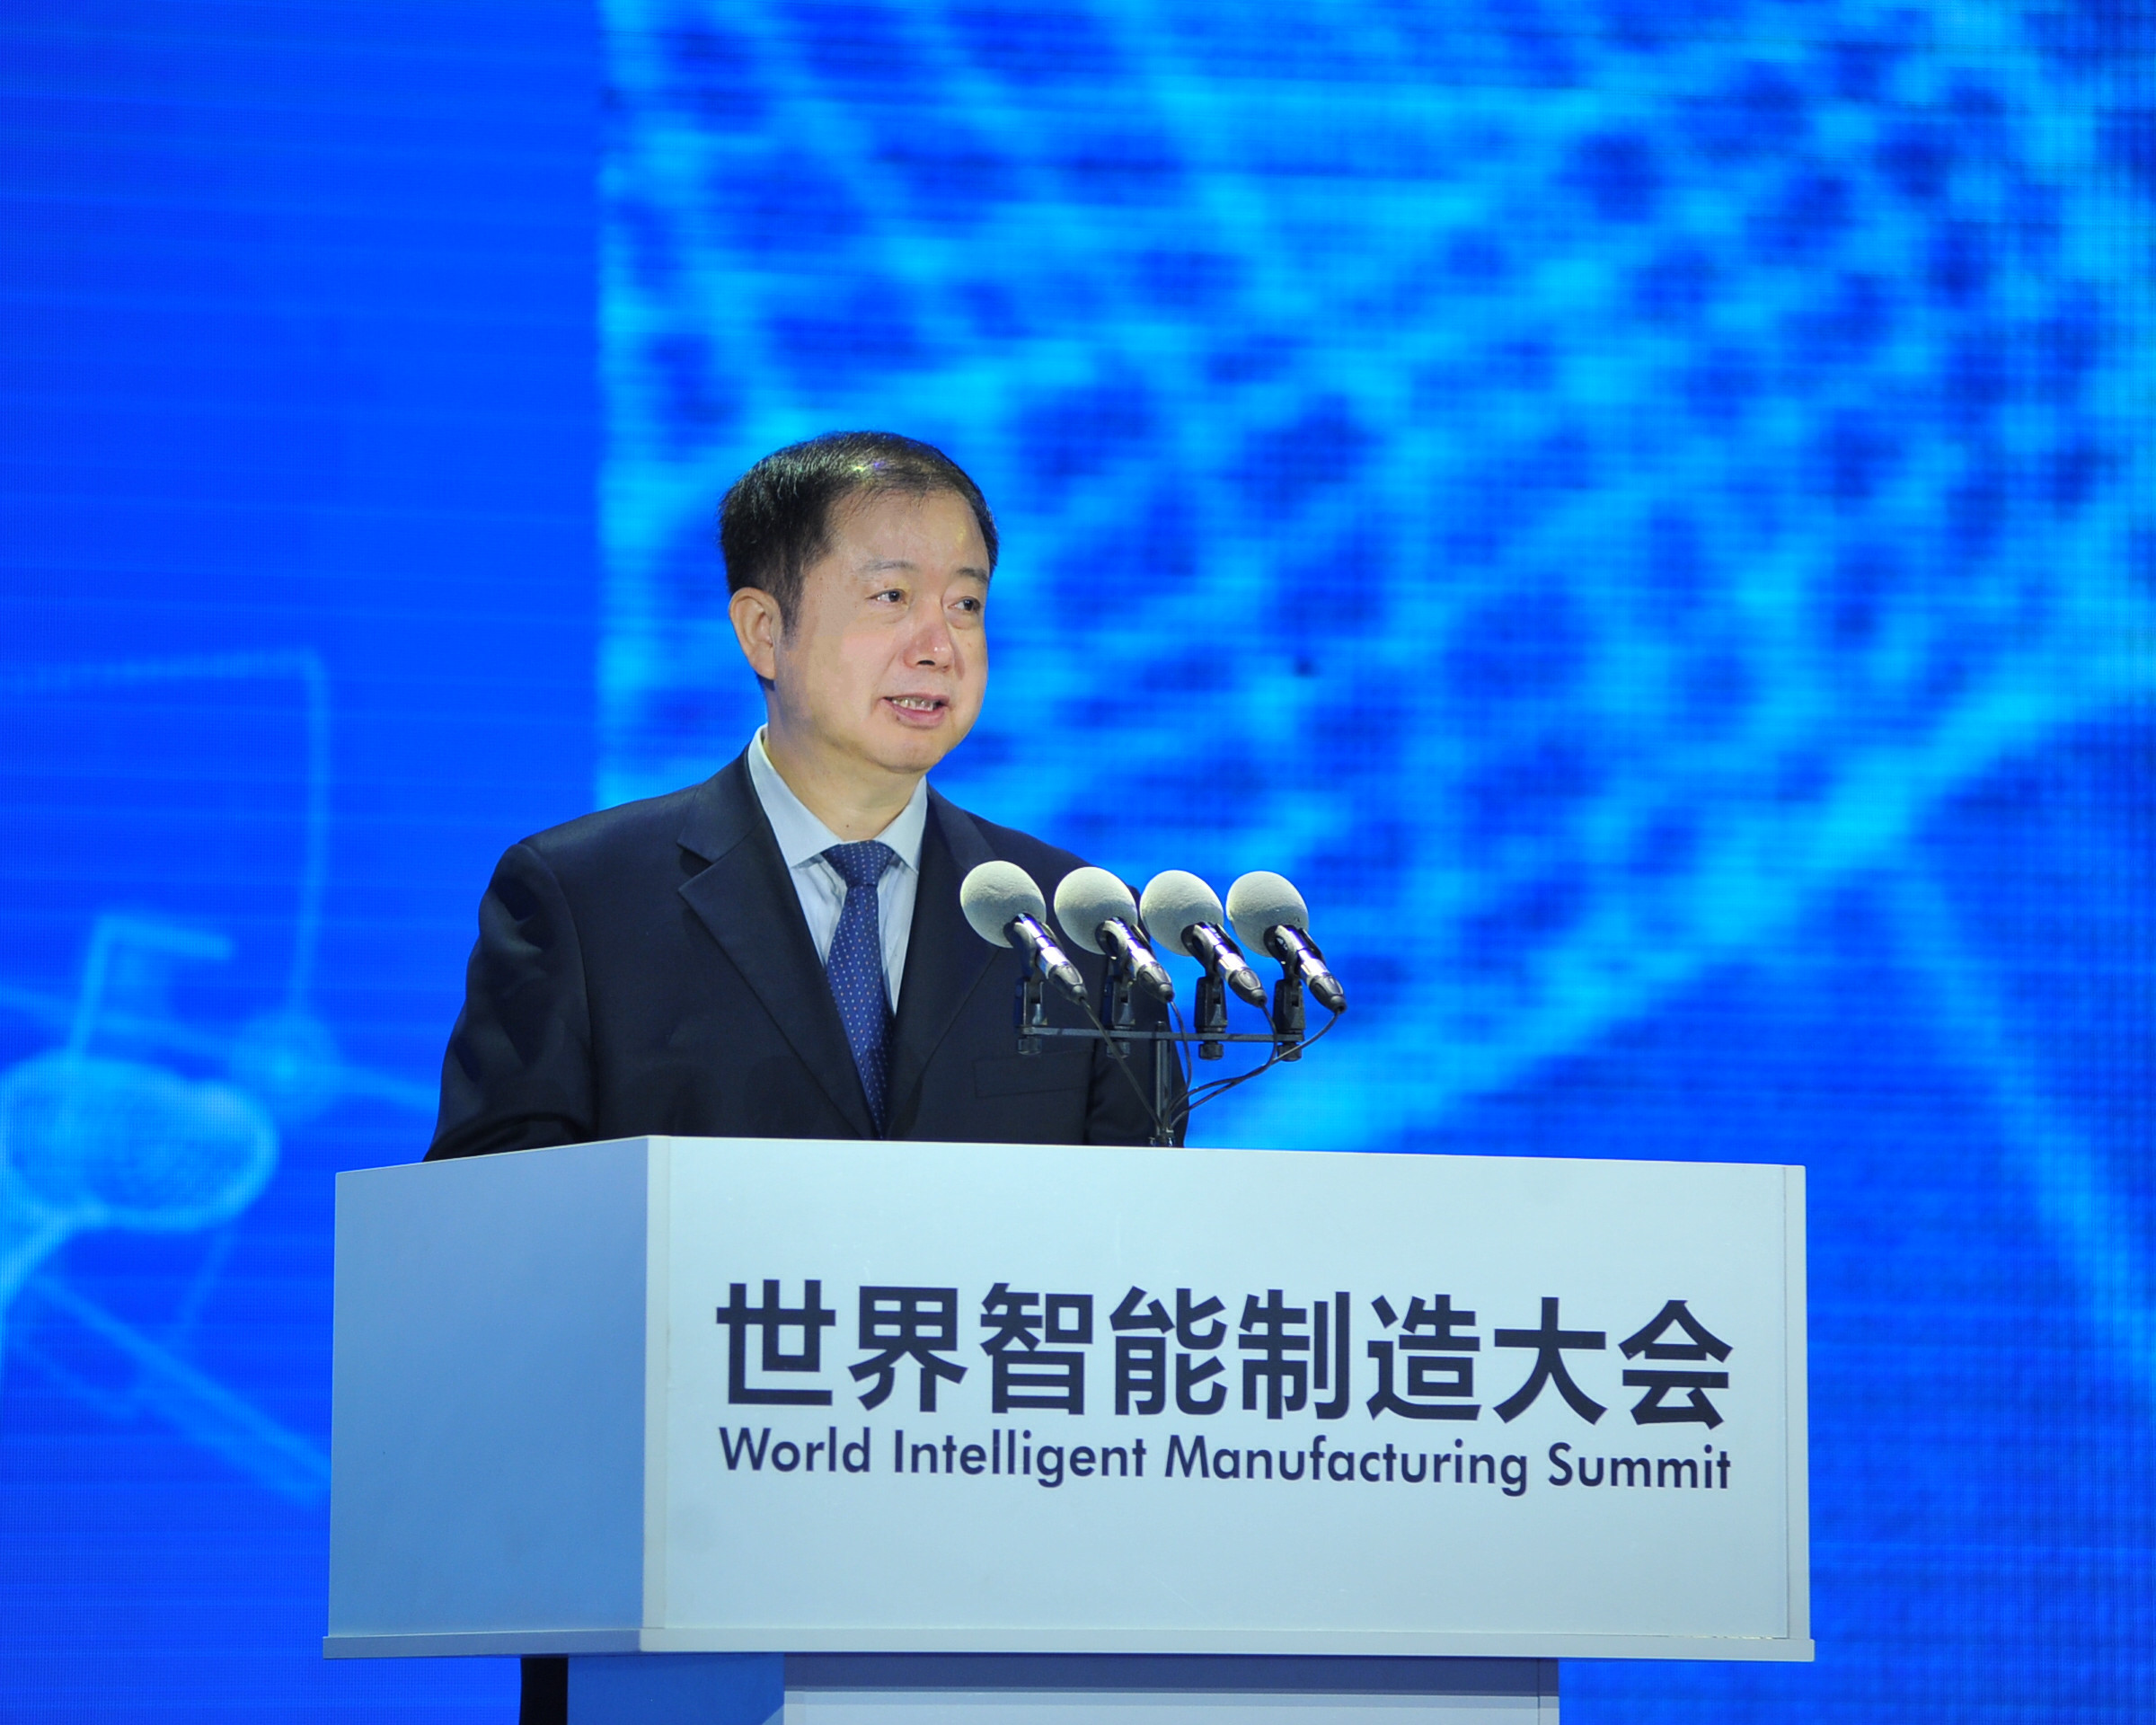 刘利华出席2017世界智能制造大会并致辞